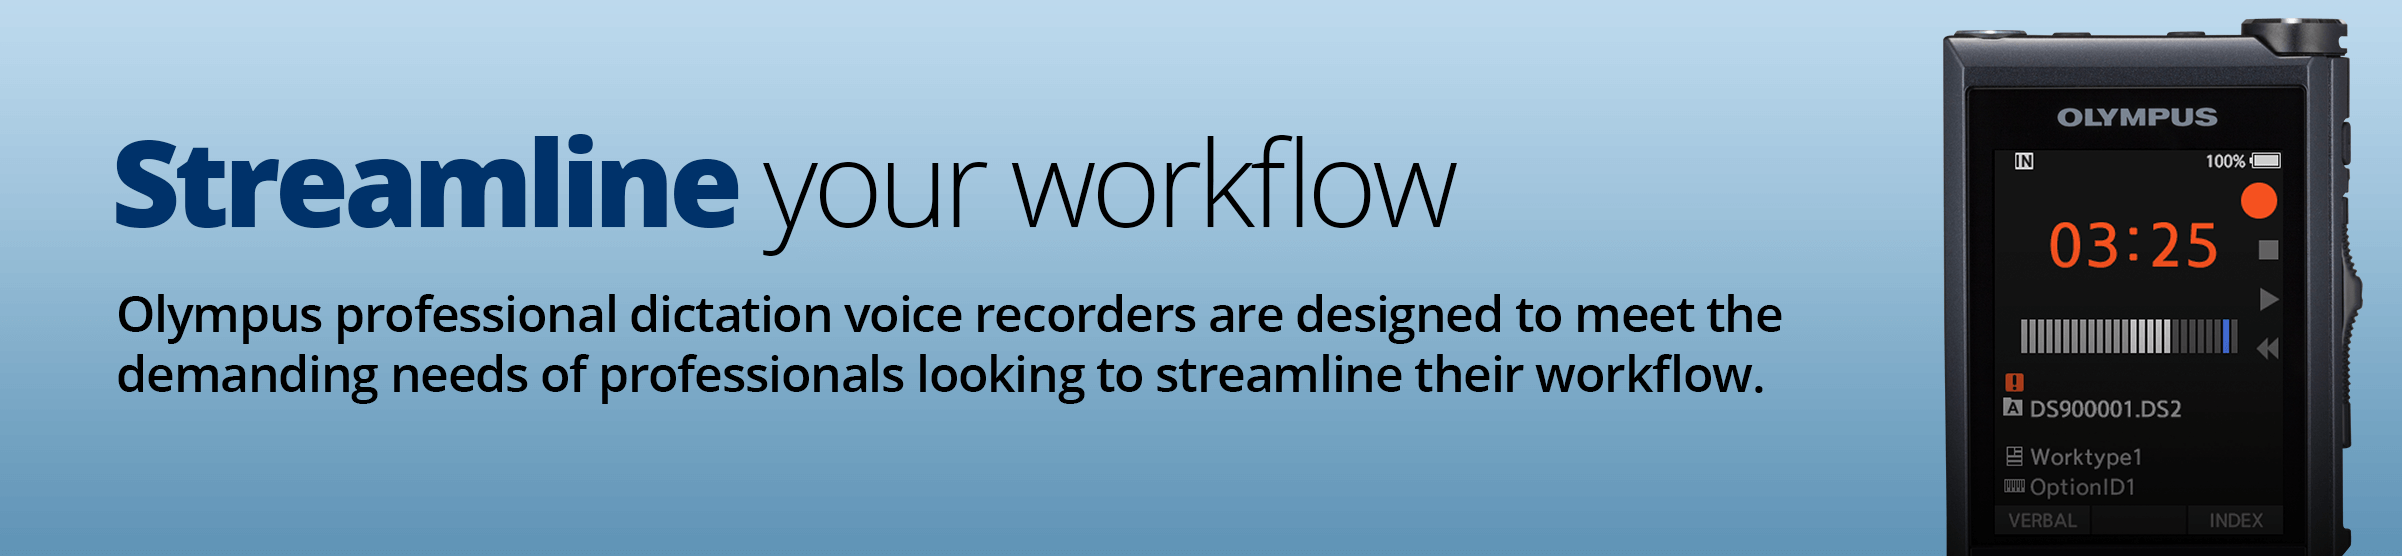 Streamline your workflow.